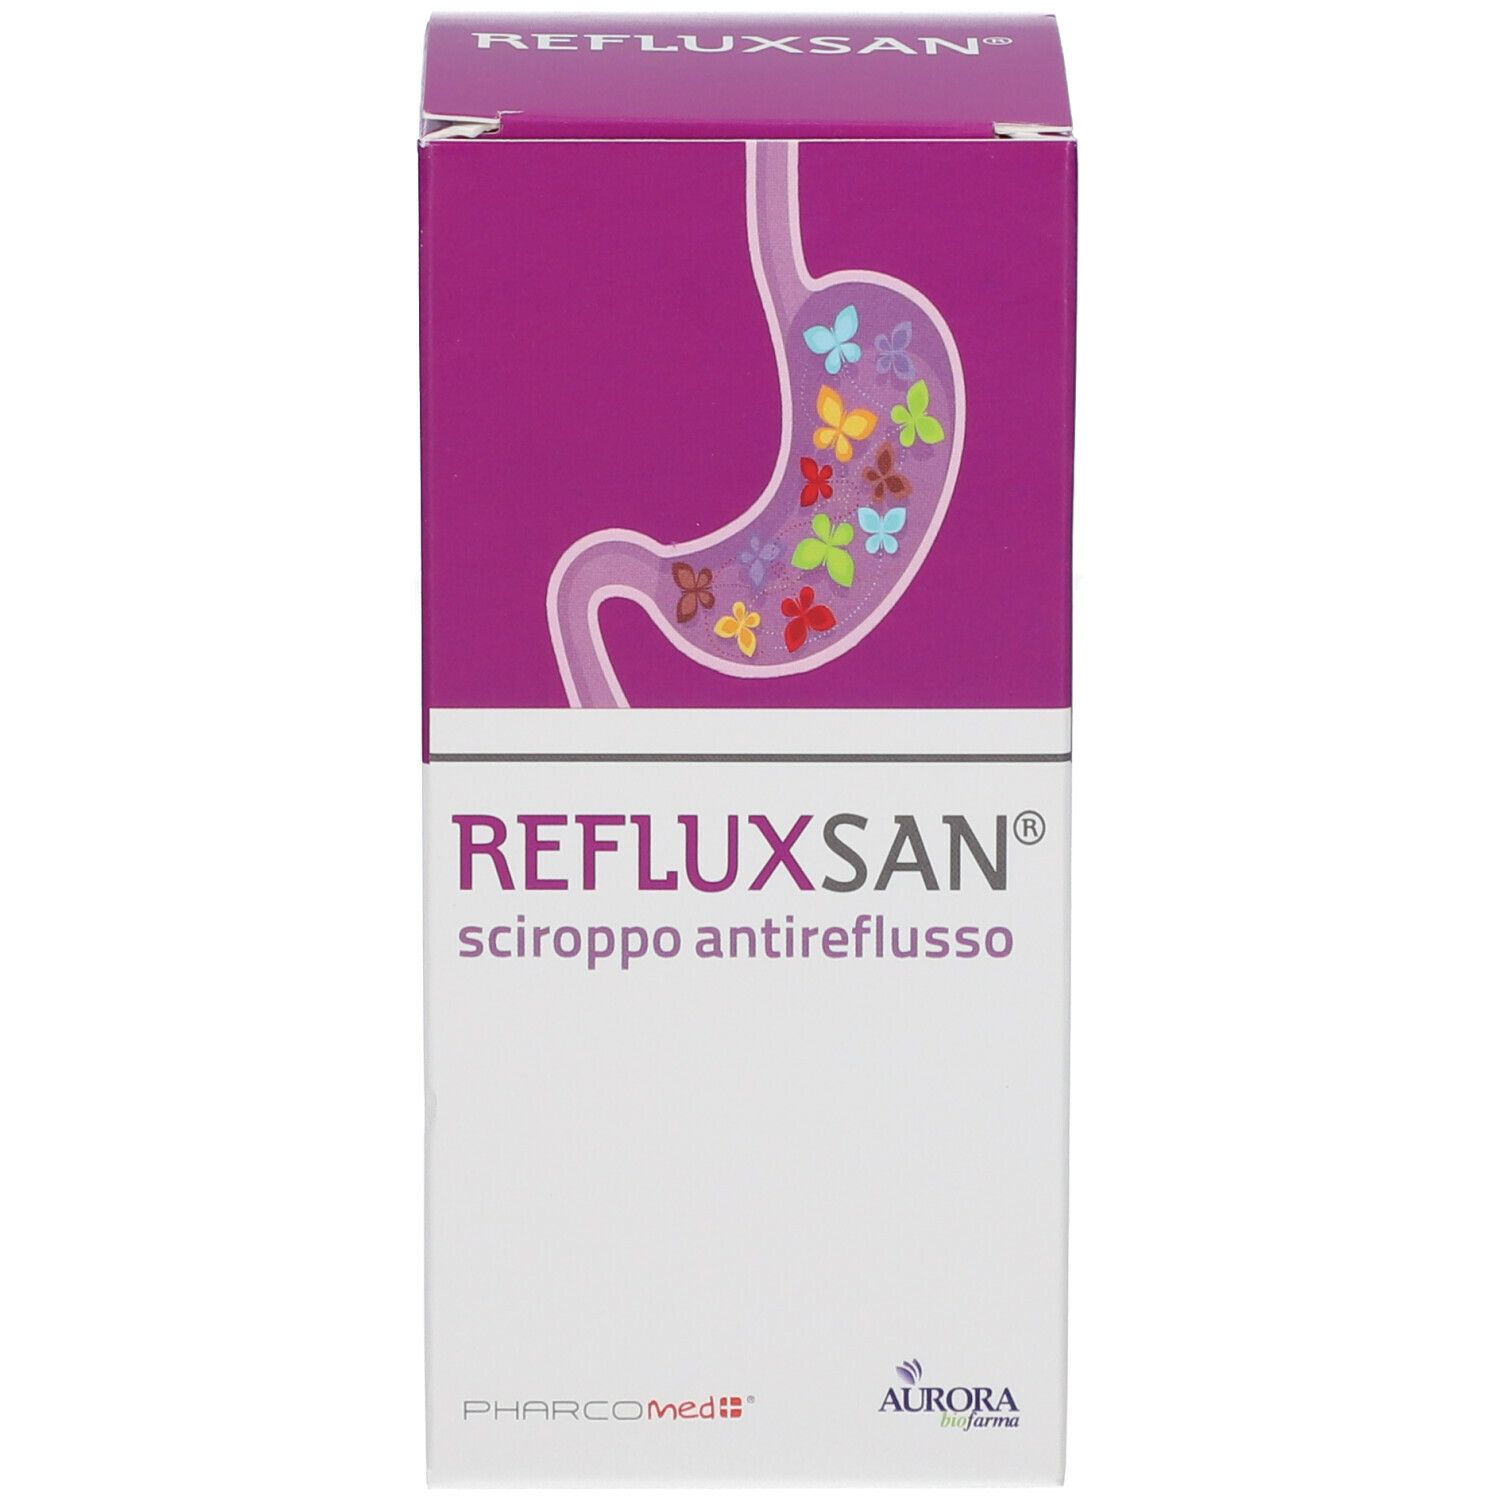 Refluxsan® Sciroppo Antireflusso